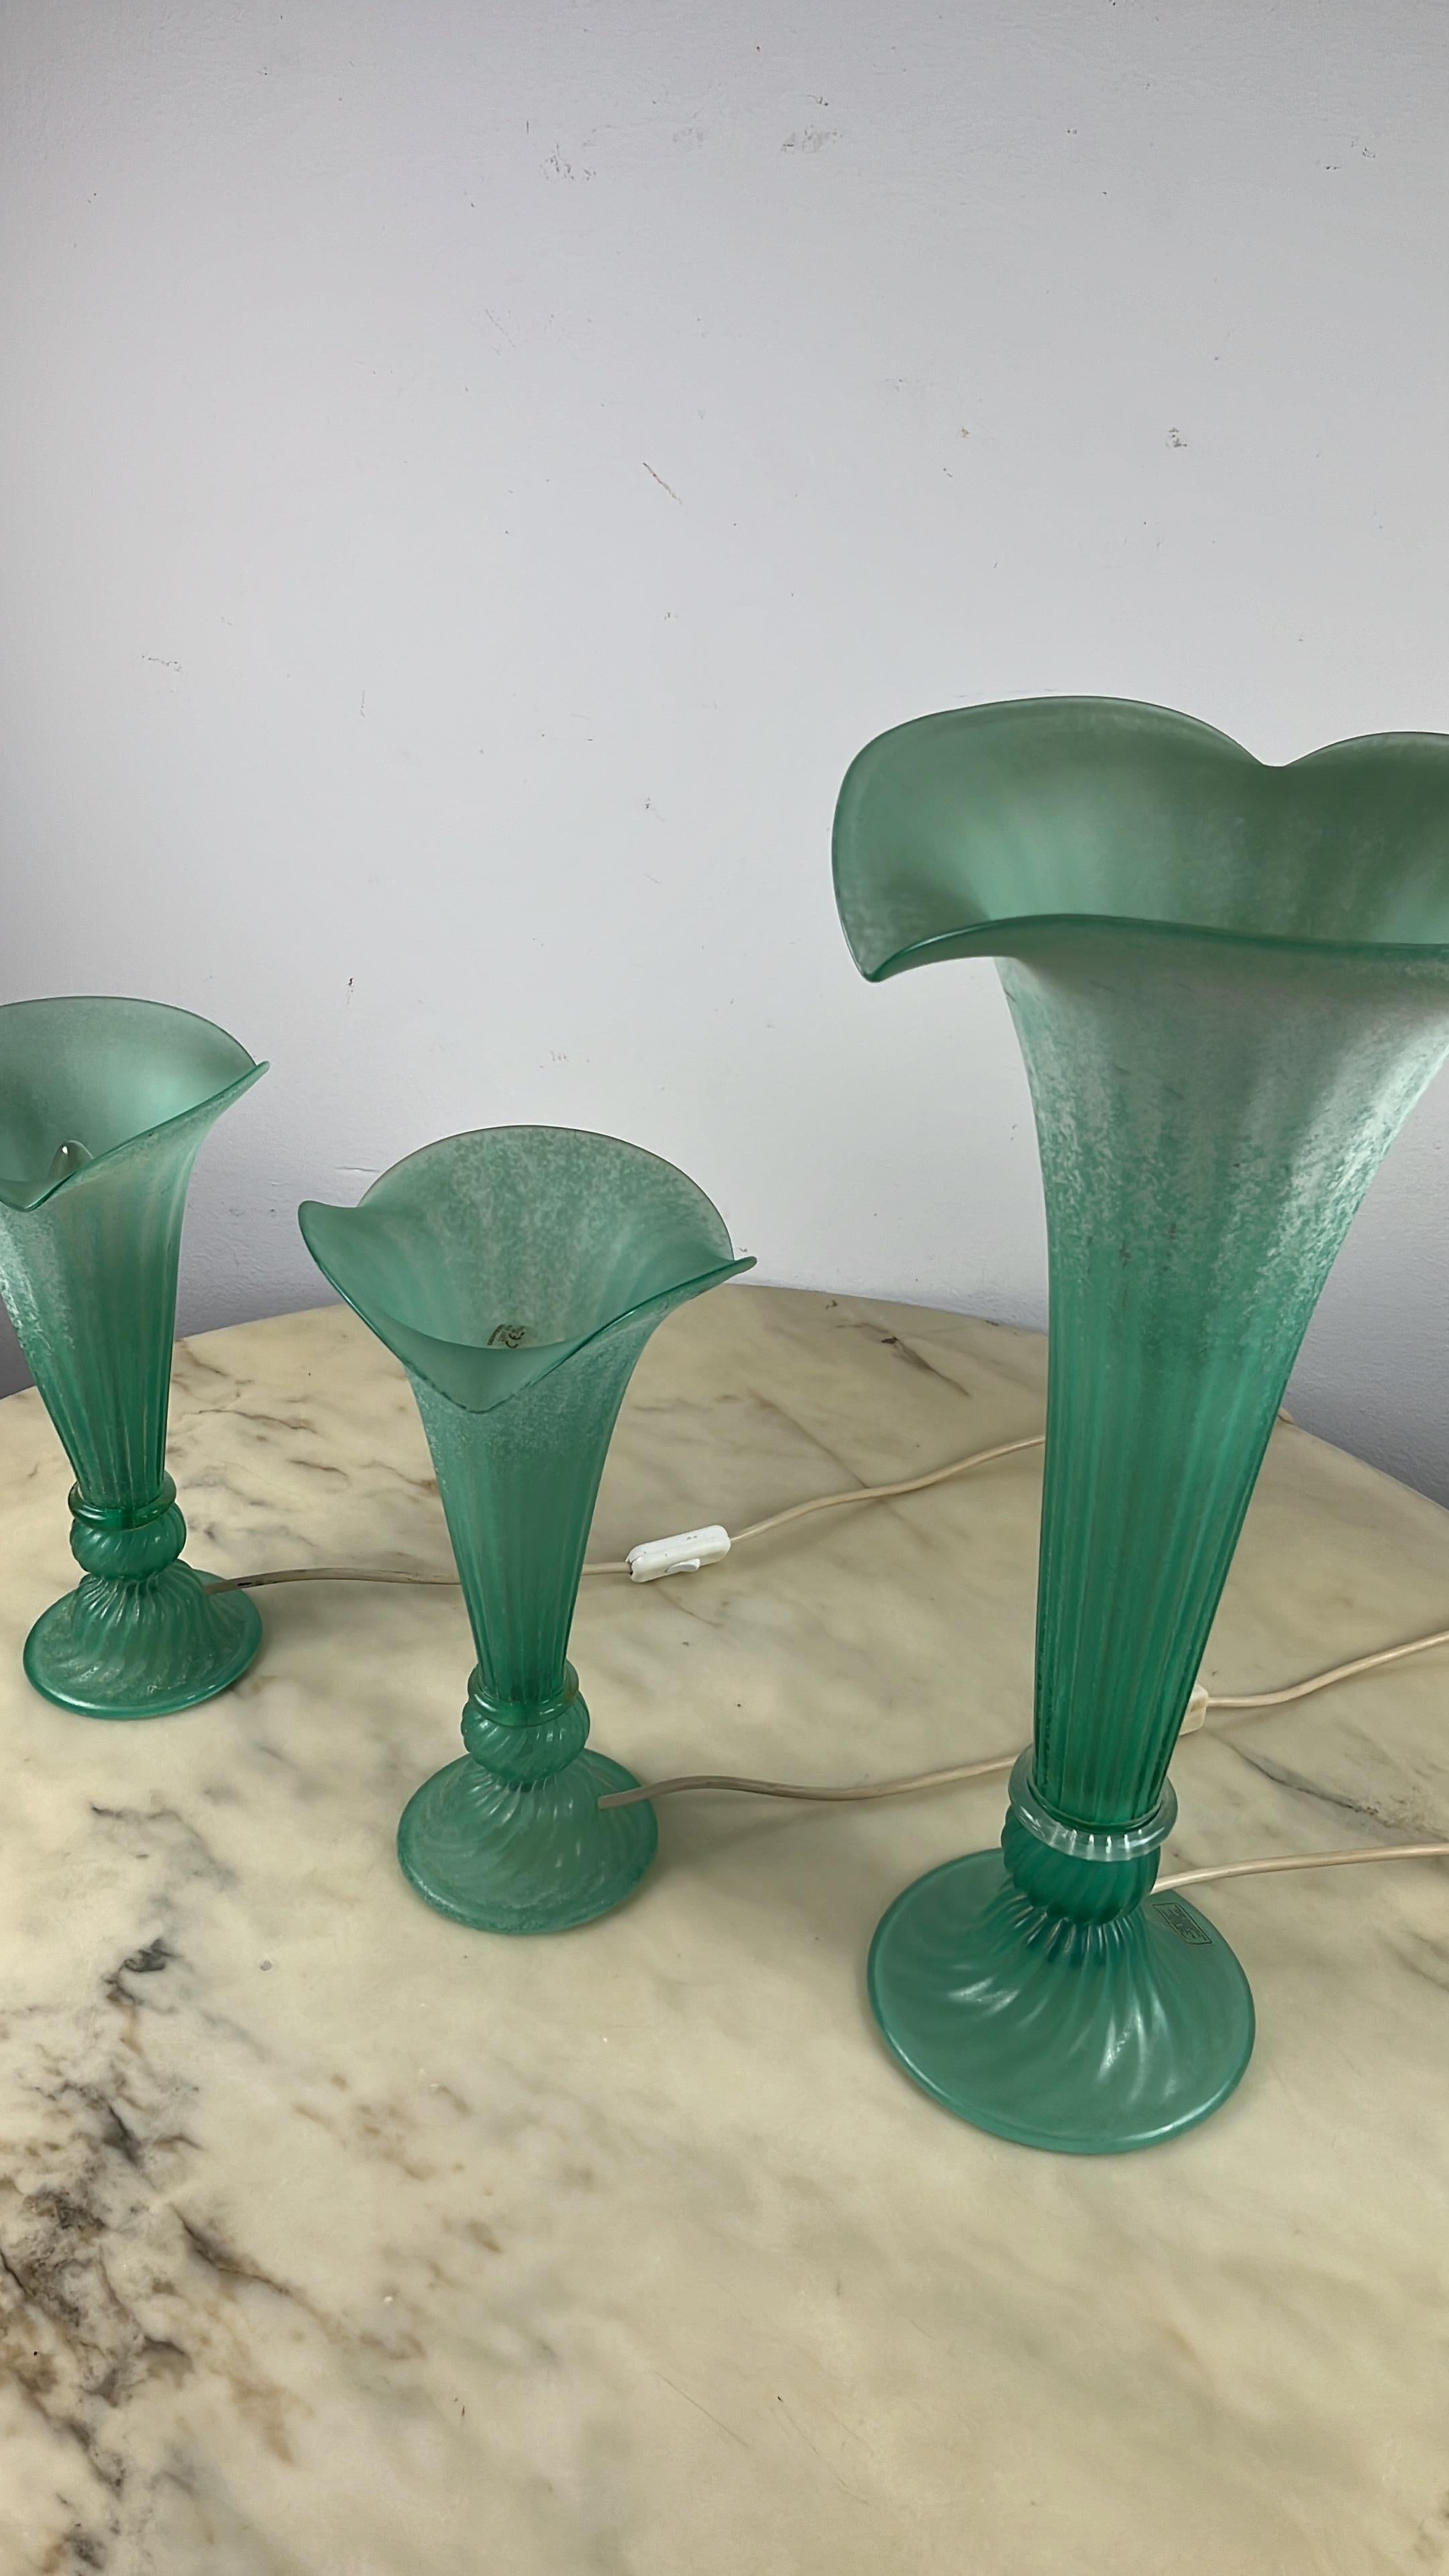 Ensemble de 3 lampes vertes en verre de Murano, Italie, années 1980.
Le grand modèle mesure 53 cm de haut et 27 cm dans sa partie la plus large. Les deux plus petits ont une hauteur de 33 cm et mesurent 18,5 cm dans la partie la plus large.
Ils ont